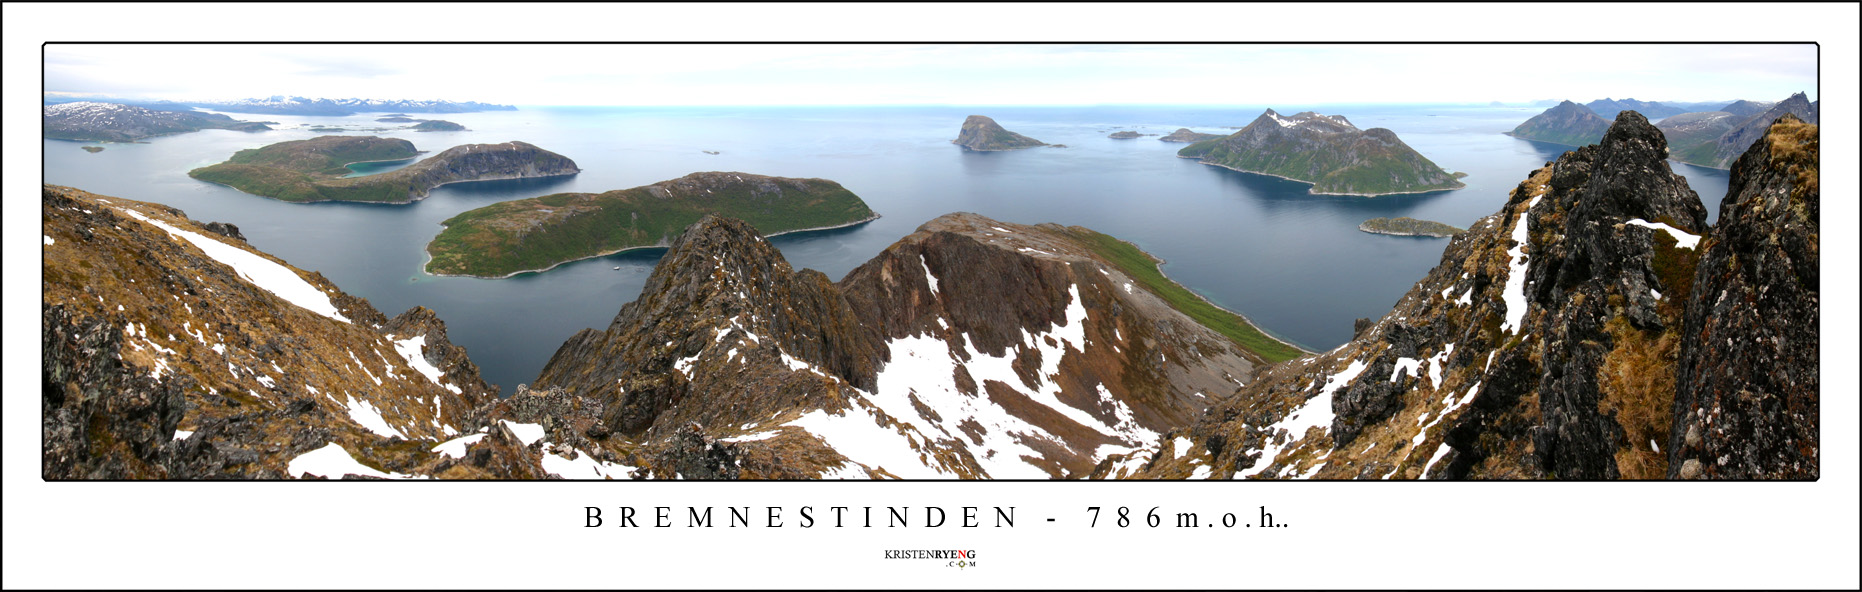 PanoramaBremnestindenWEB.jpg - Utsikt fra Bremnestinden. Bak til venstre ses Sommarøy, Tussøy og like til venstre for midten av bildet Høgøya. Bak midt i bildet ligger Håja med Sessøya til høyre. Ute i høyre billedkant, i bakkant, ses Rekvik.